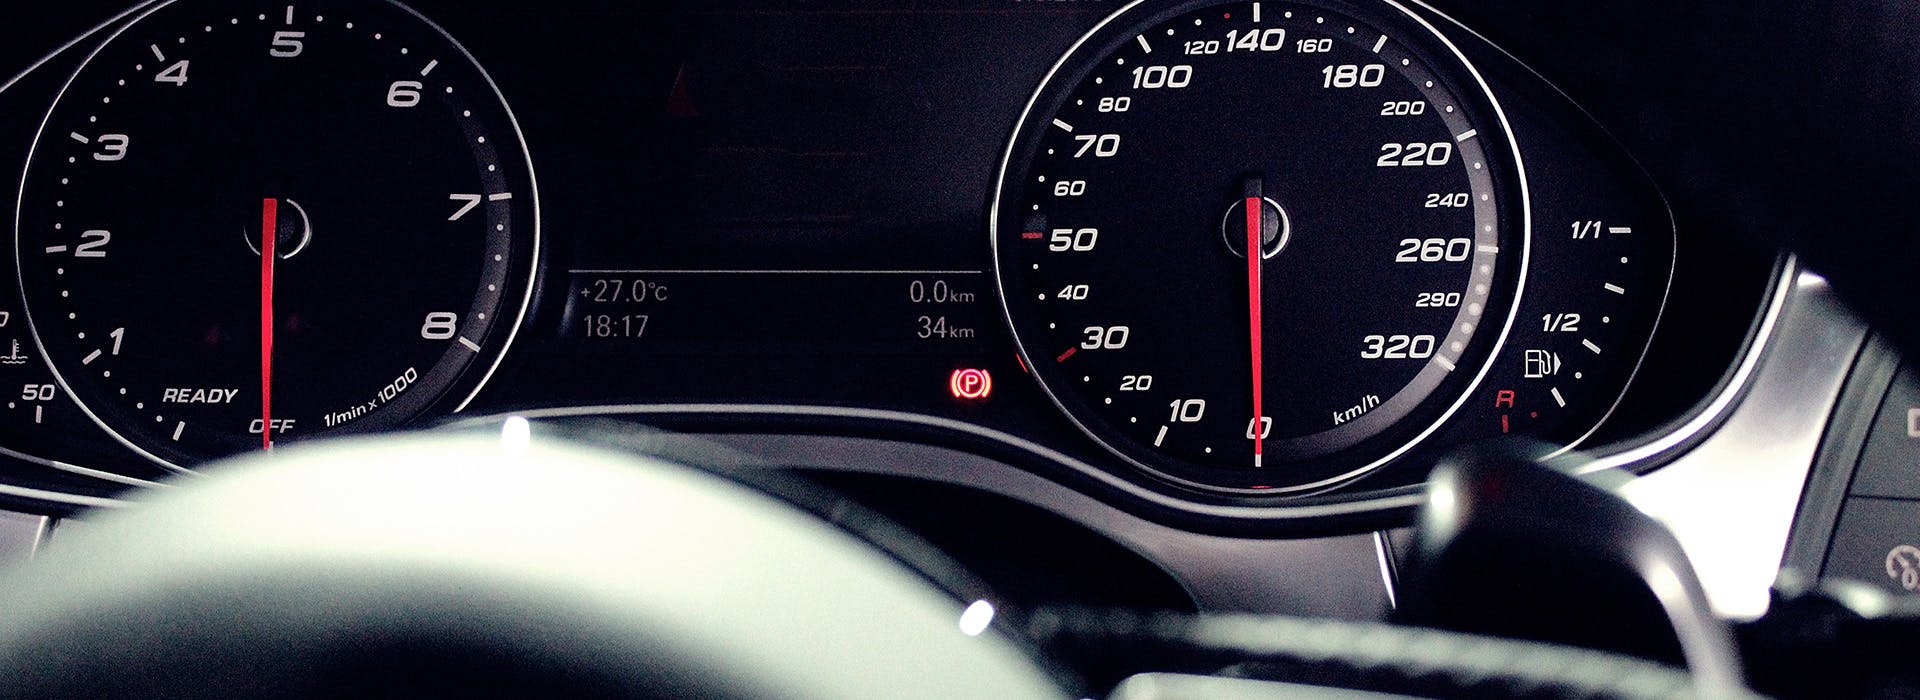 cars speedometer